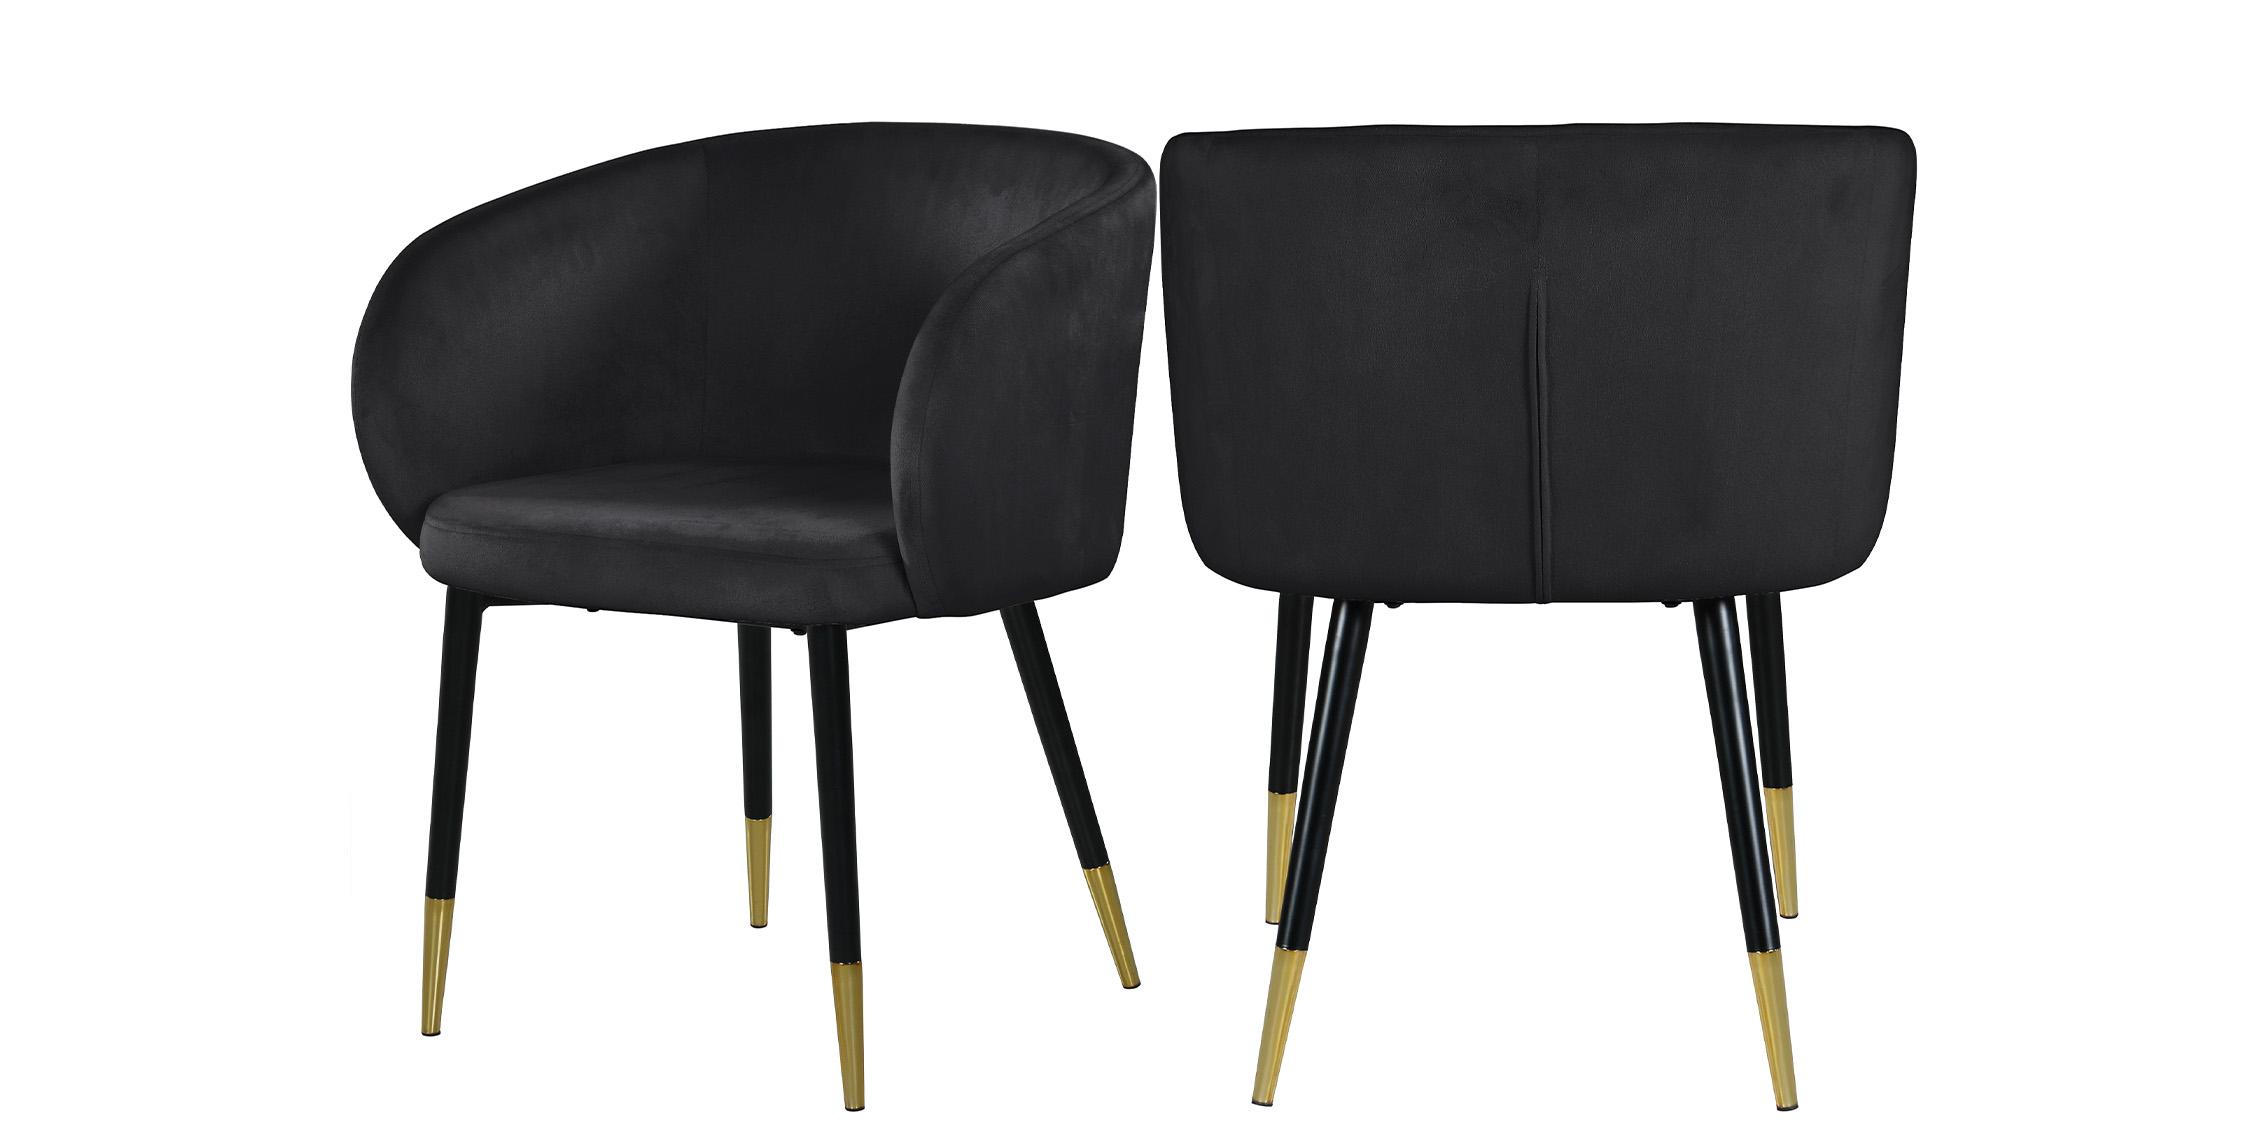 Contemporary, Modern Dining Chair Set LOUISE 733Black 733Black-C-Set-2 in Chrome, Black Velvet